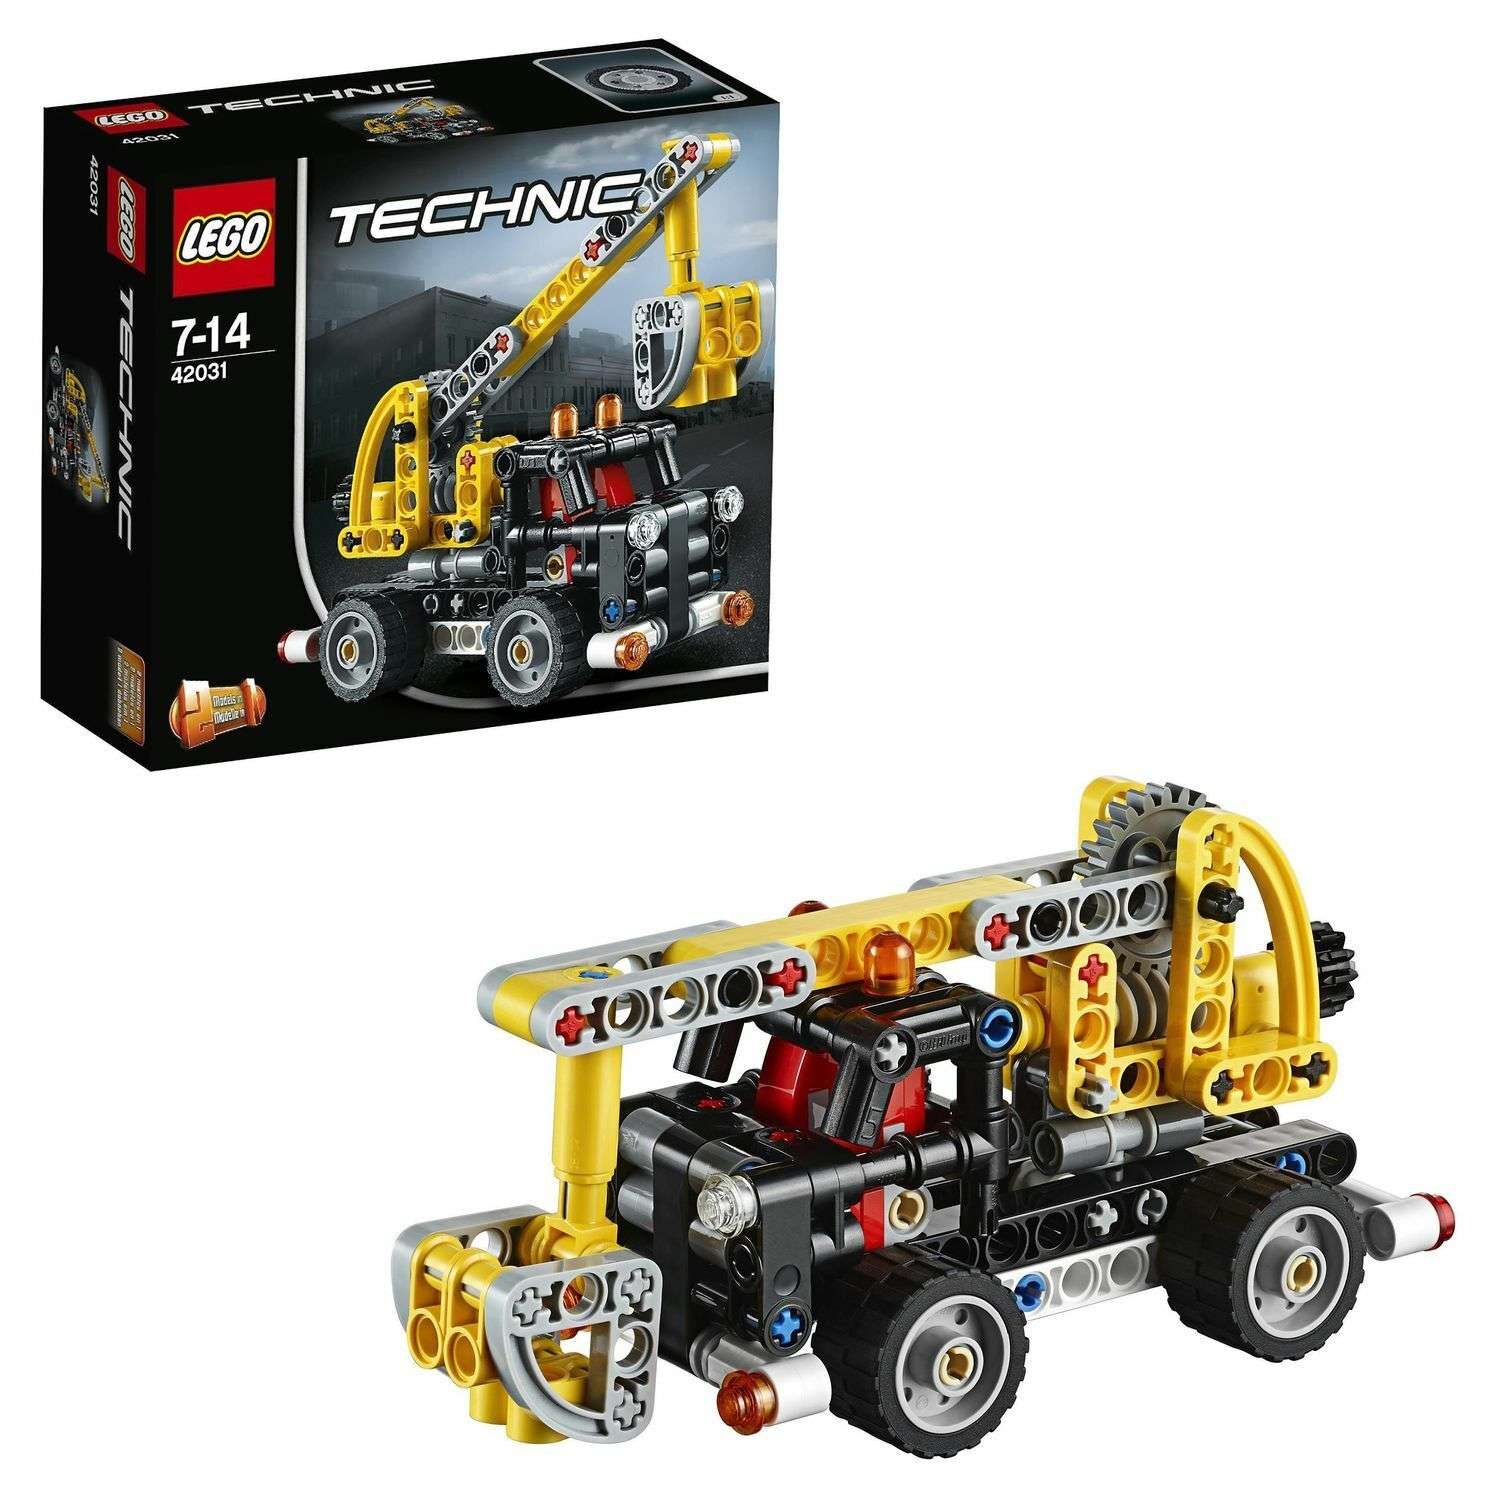 Конструктор LEGO Technic Ремонтный автокран (42031) - фото 1